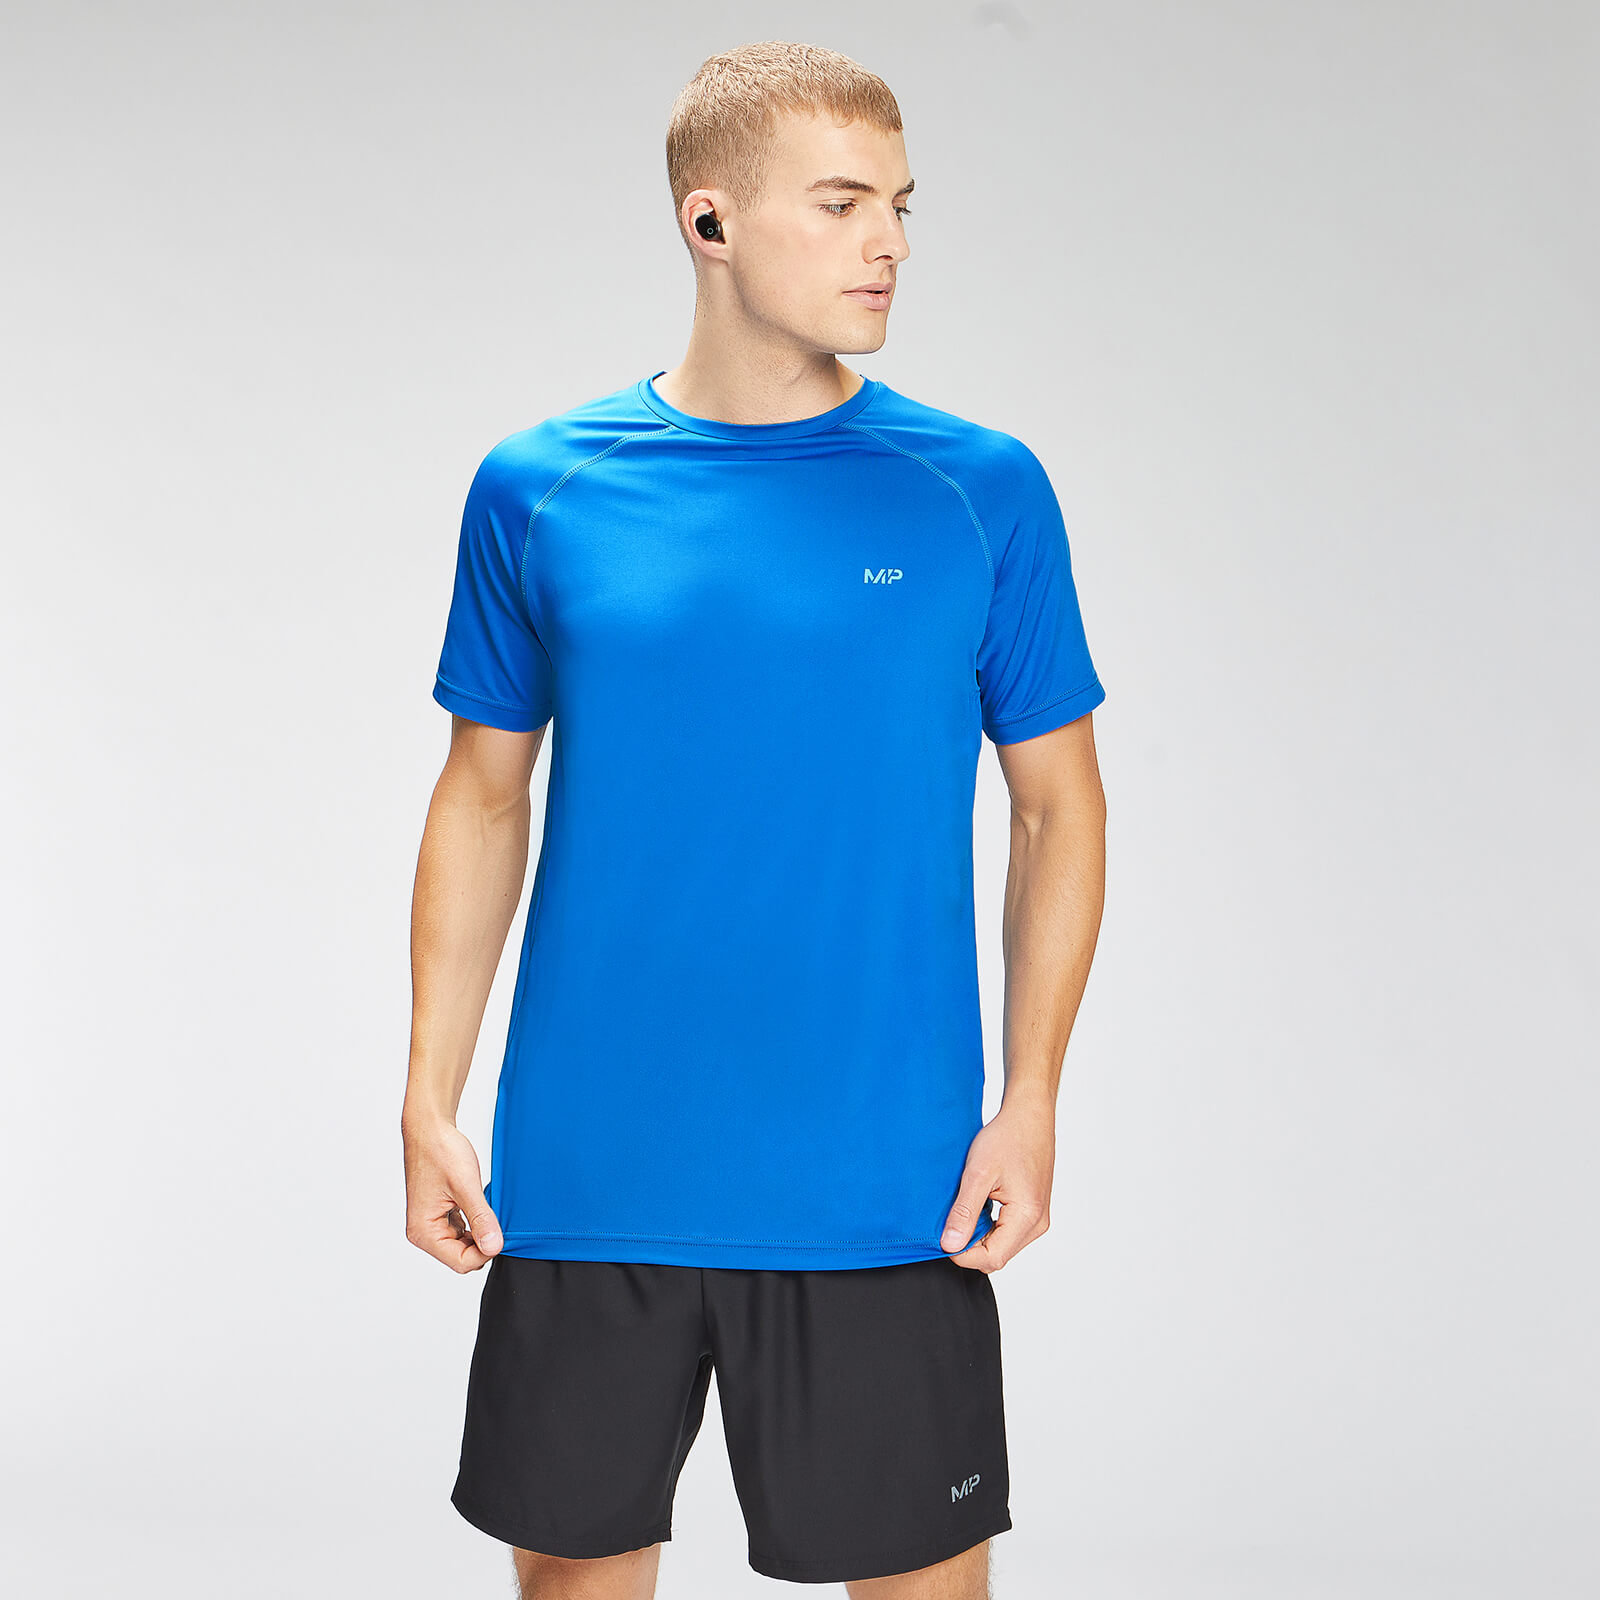 T-shirt à manches courtes à imprimé répétitif MP Graphic Training pour hommes – Bleu pur - M product